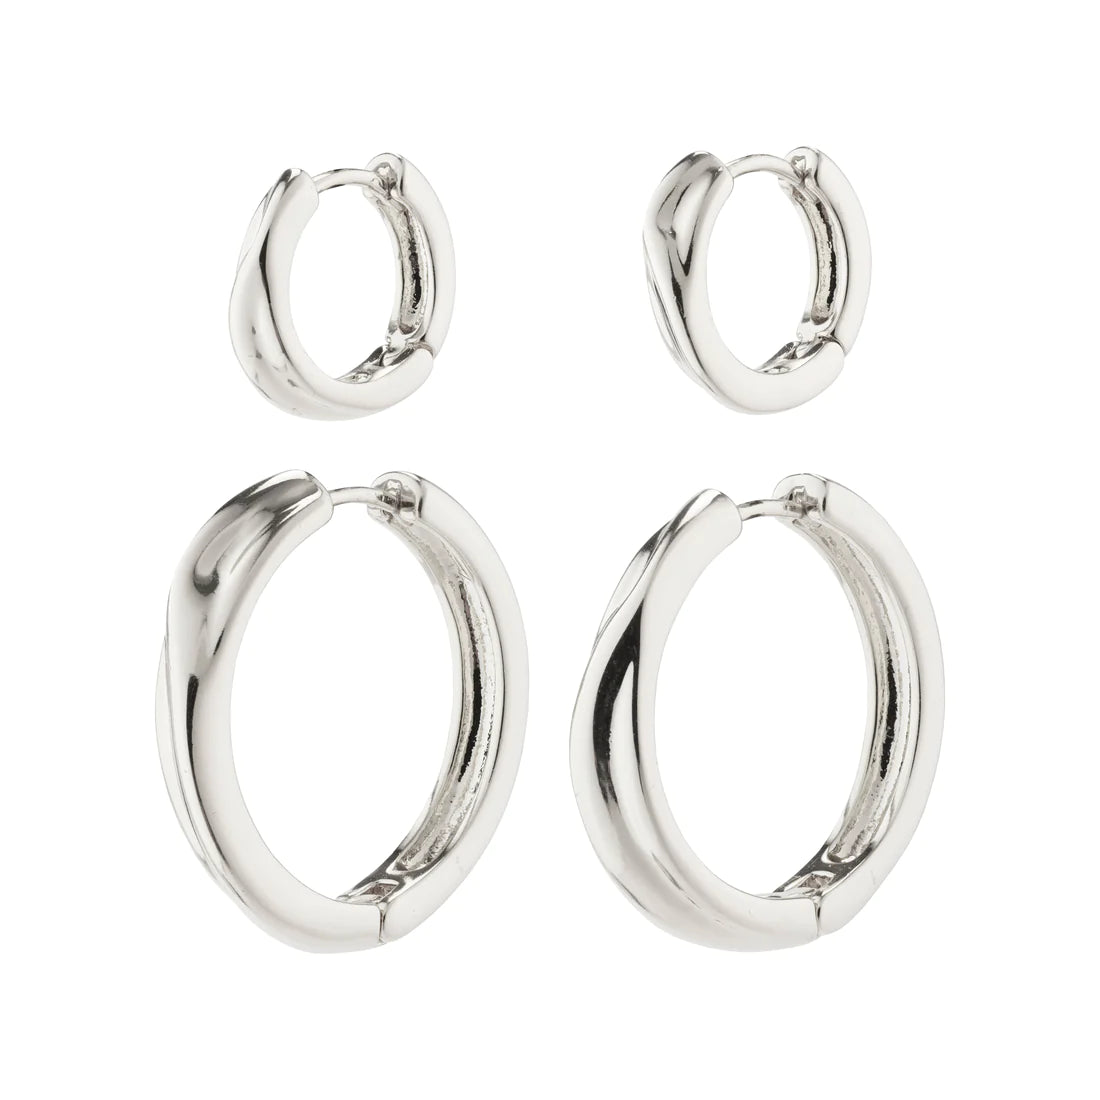 Allie Hoop Earrings 2-in-1 set Gold- or Silver-plated